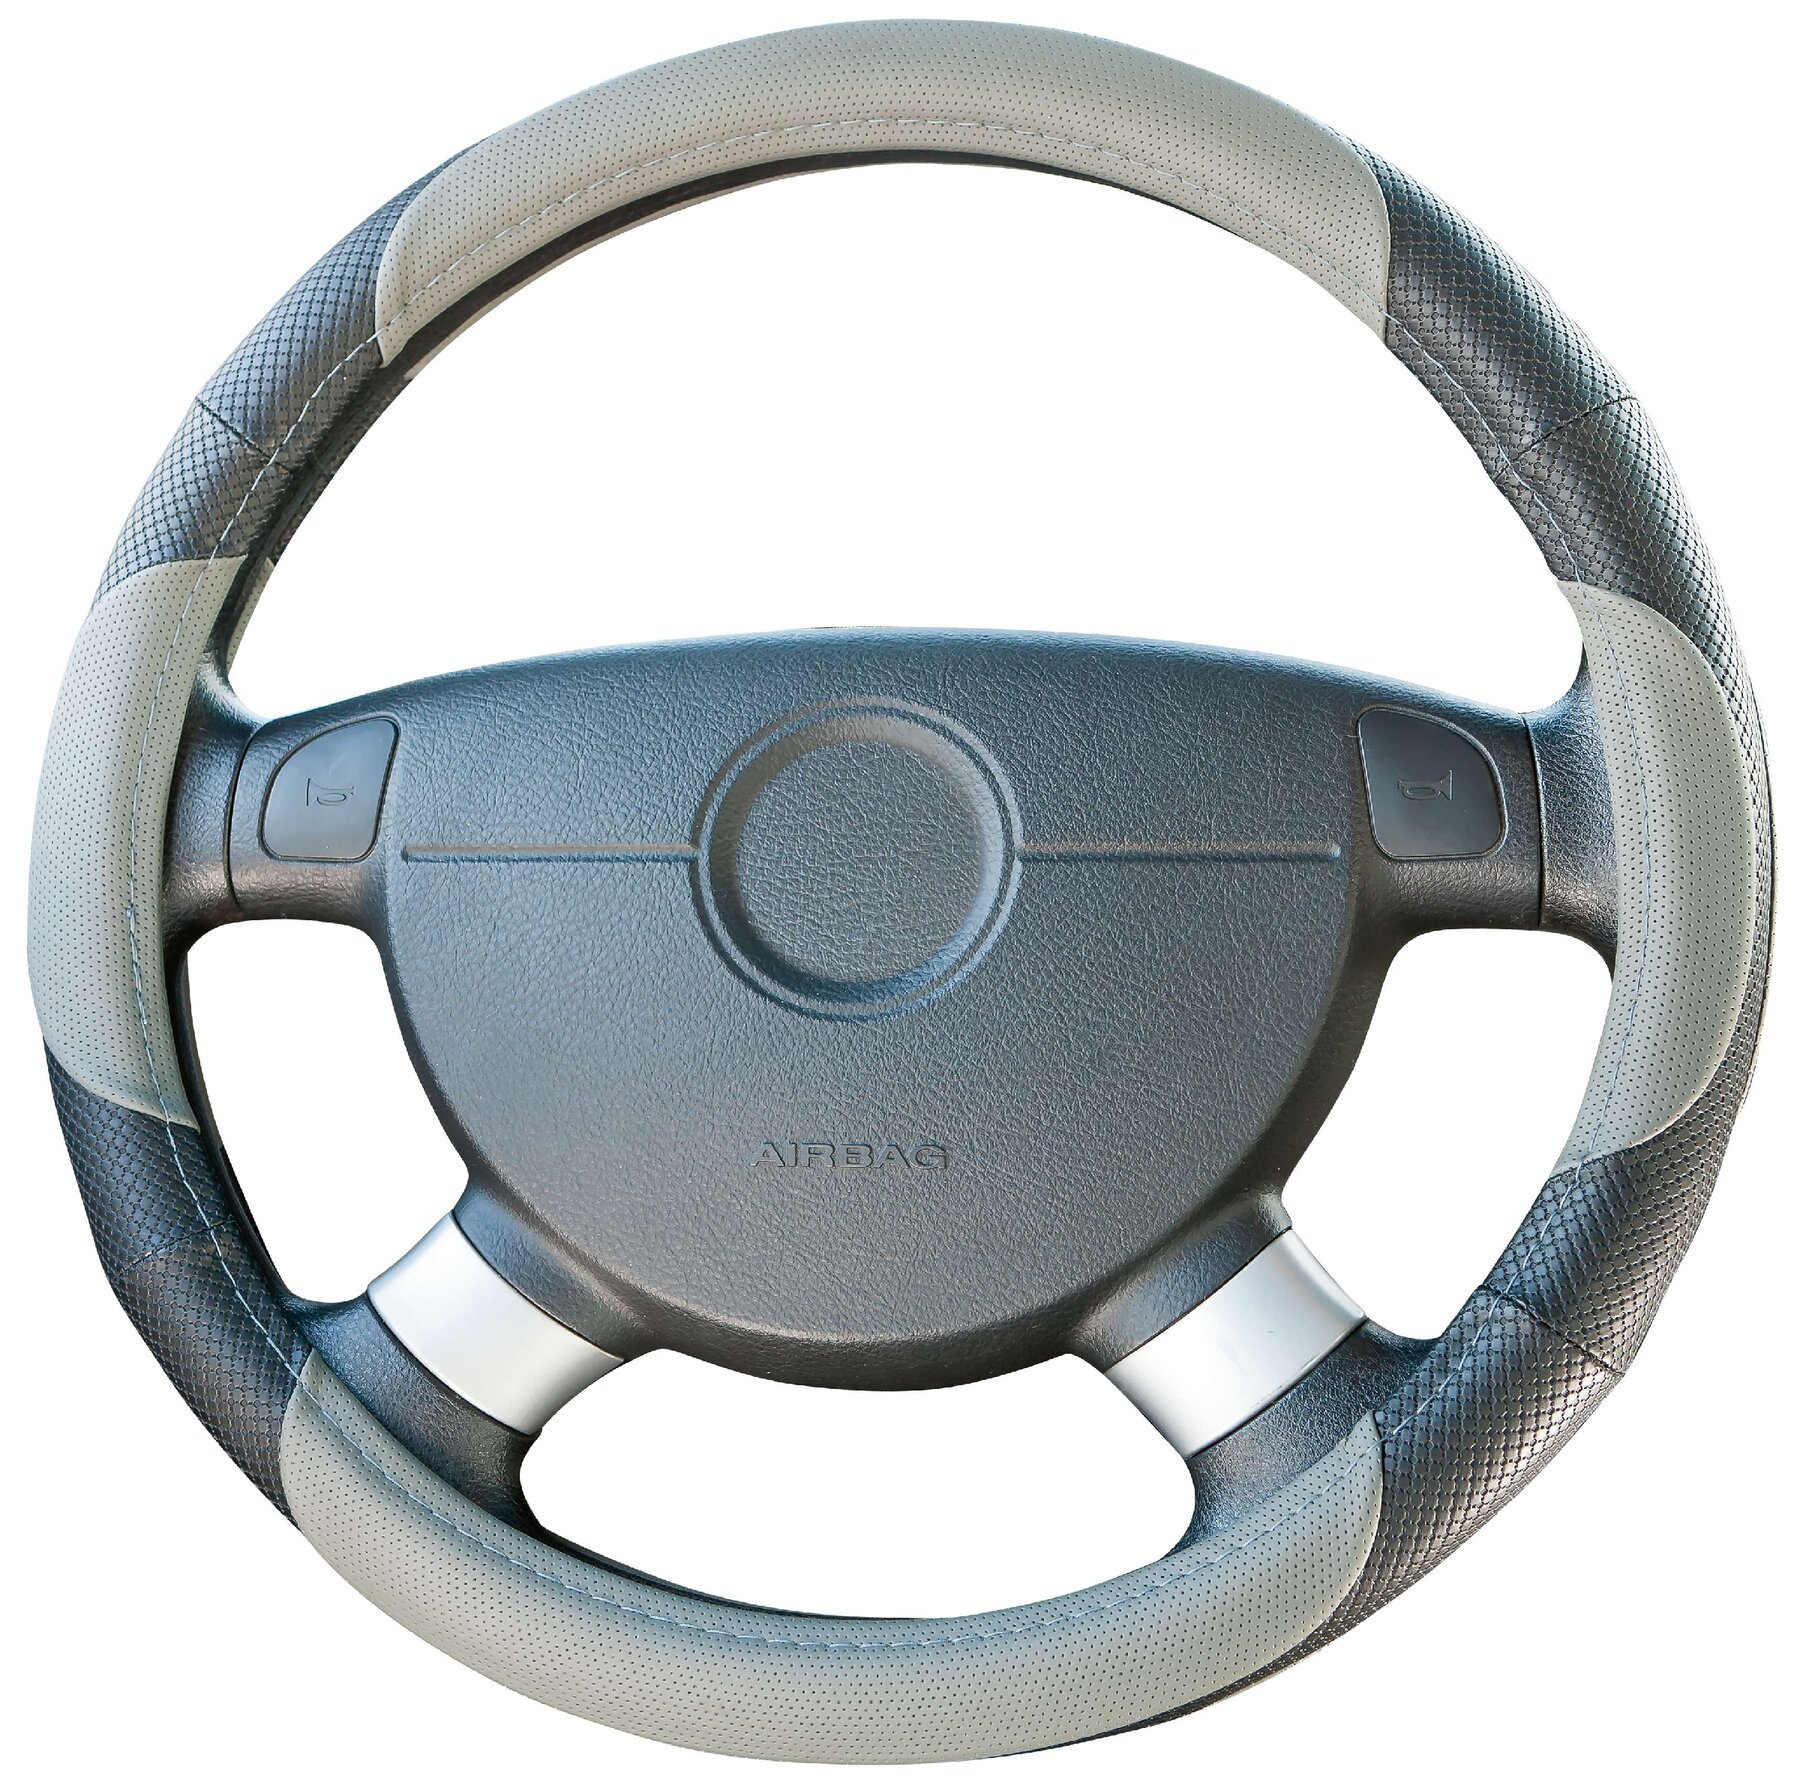 Steering wheel cover steering wheel cover sport grey